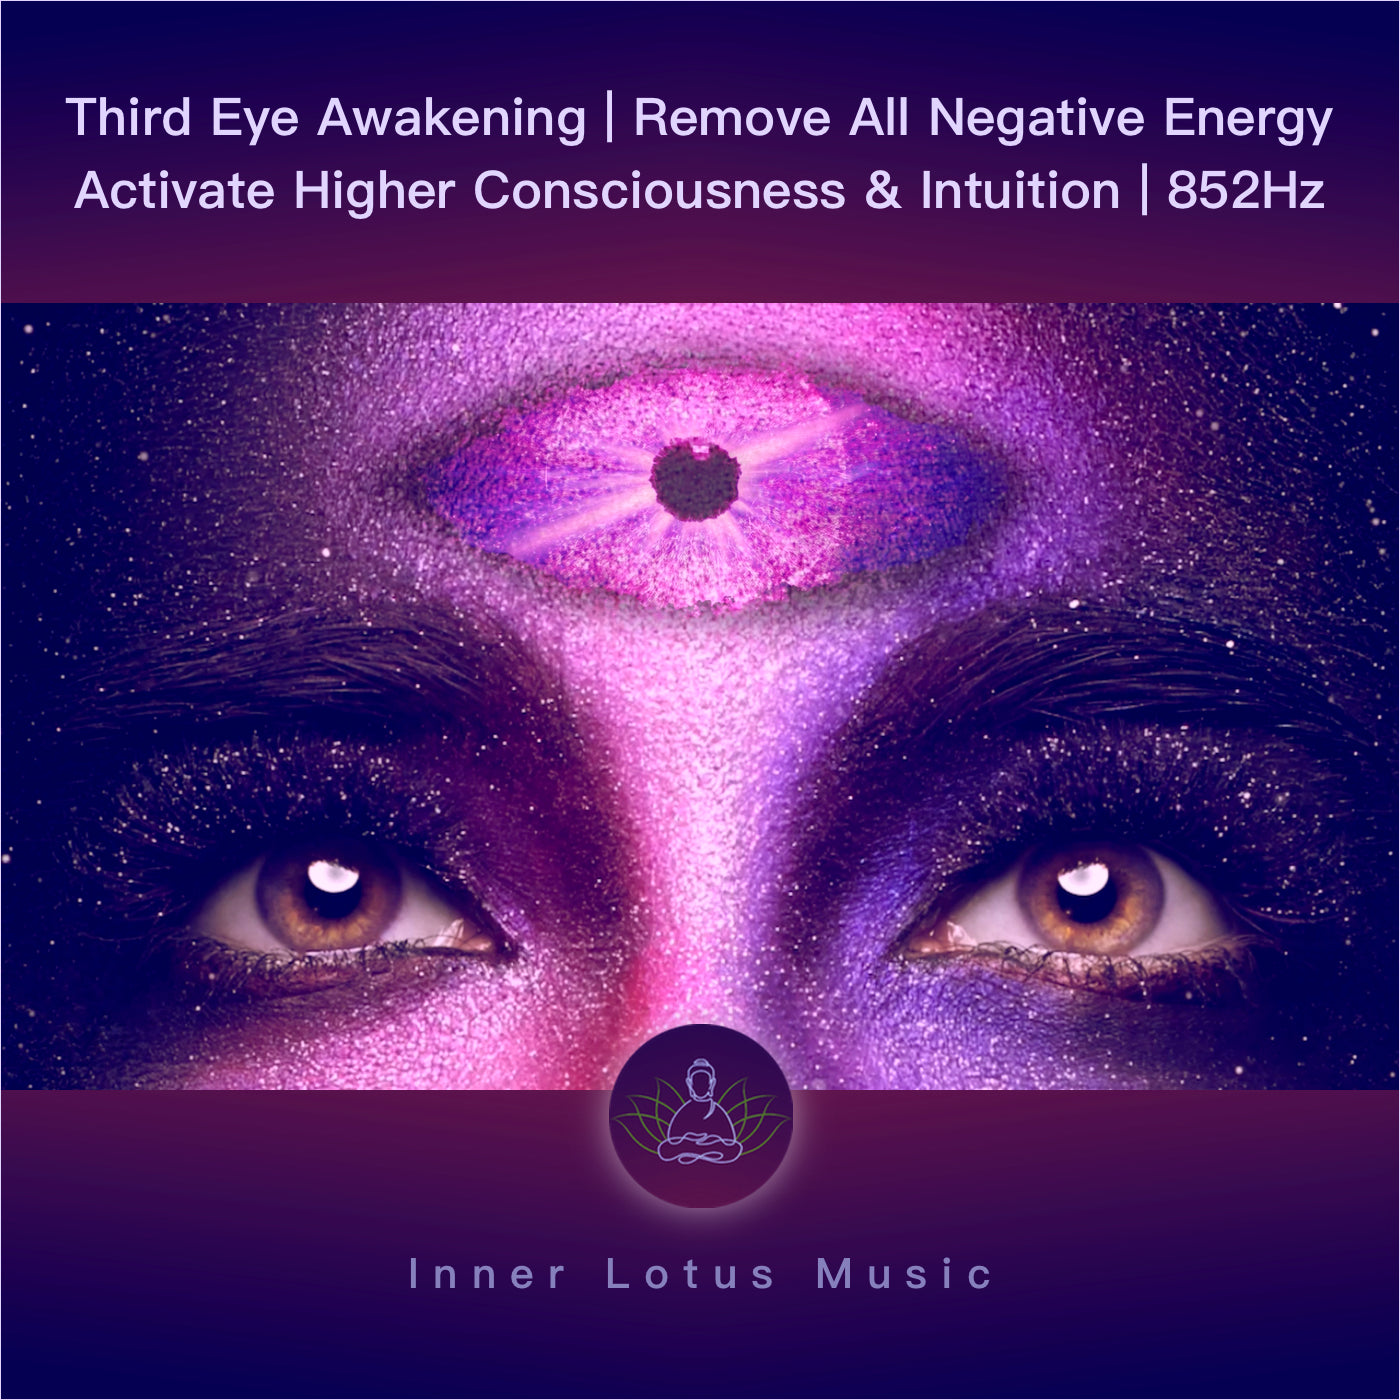 Erwecke Das Dritte Auge | Beseitige Alle Negative Energie | Aktiviere Intuition, Bewusstsein | 852Hz